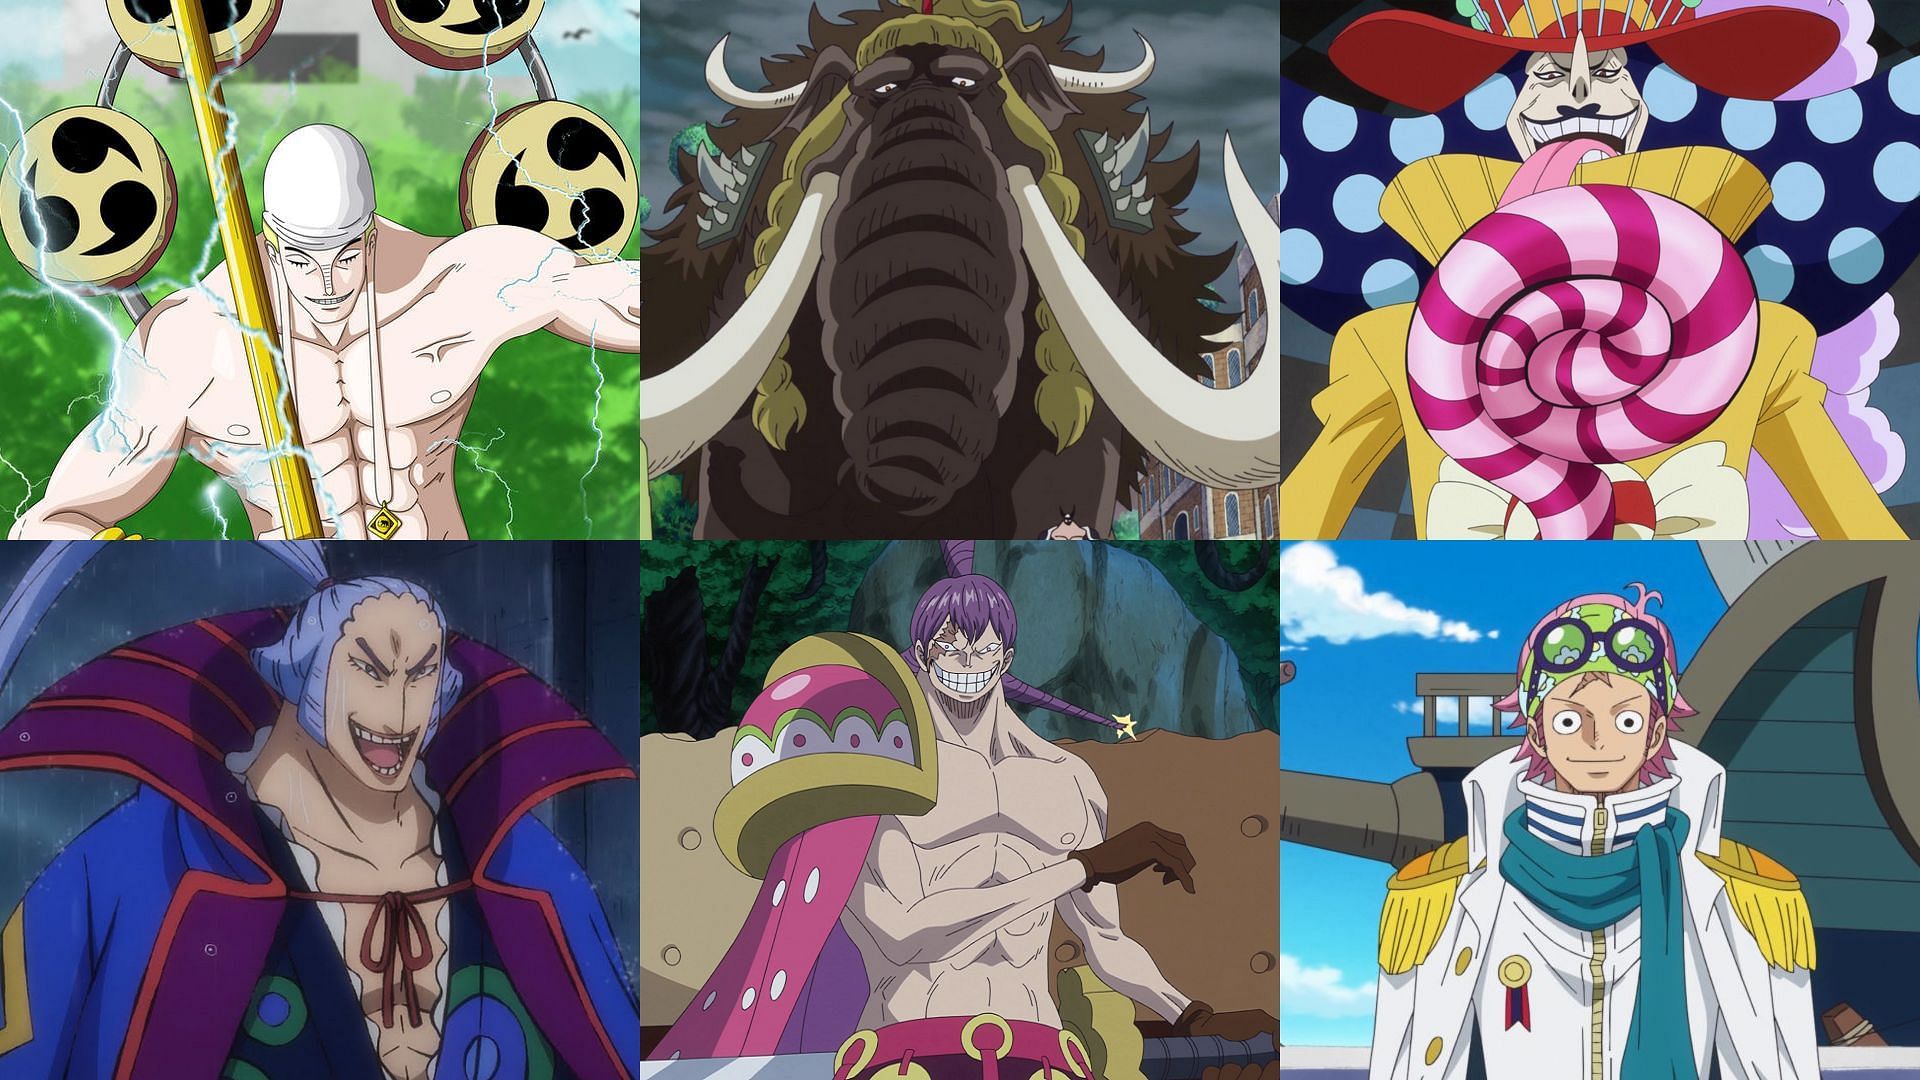 Enel, Denjiro, Cracker, Jack, Perospero and Koby (Image via Toei Animation, One Piece)